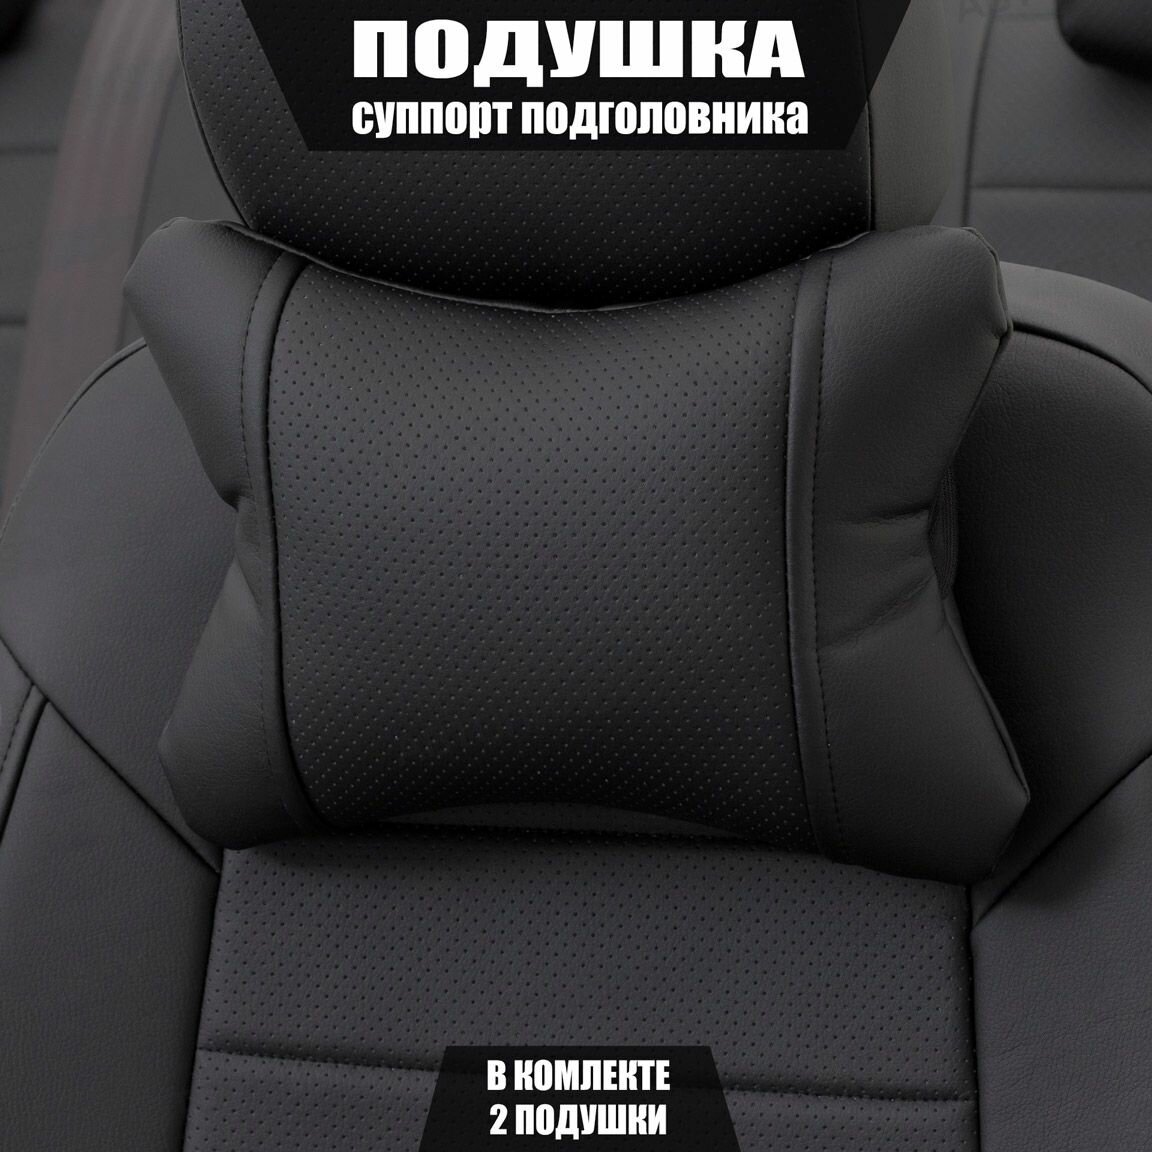 Подушки под шею (суппорт подголовника) для Фольксваген Эос (2010 - 2015) кабриолет / Volkswagen Eos Экокожа 2 подушки Черный